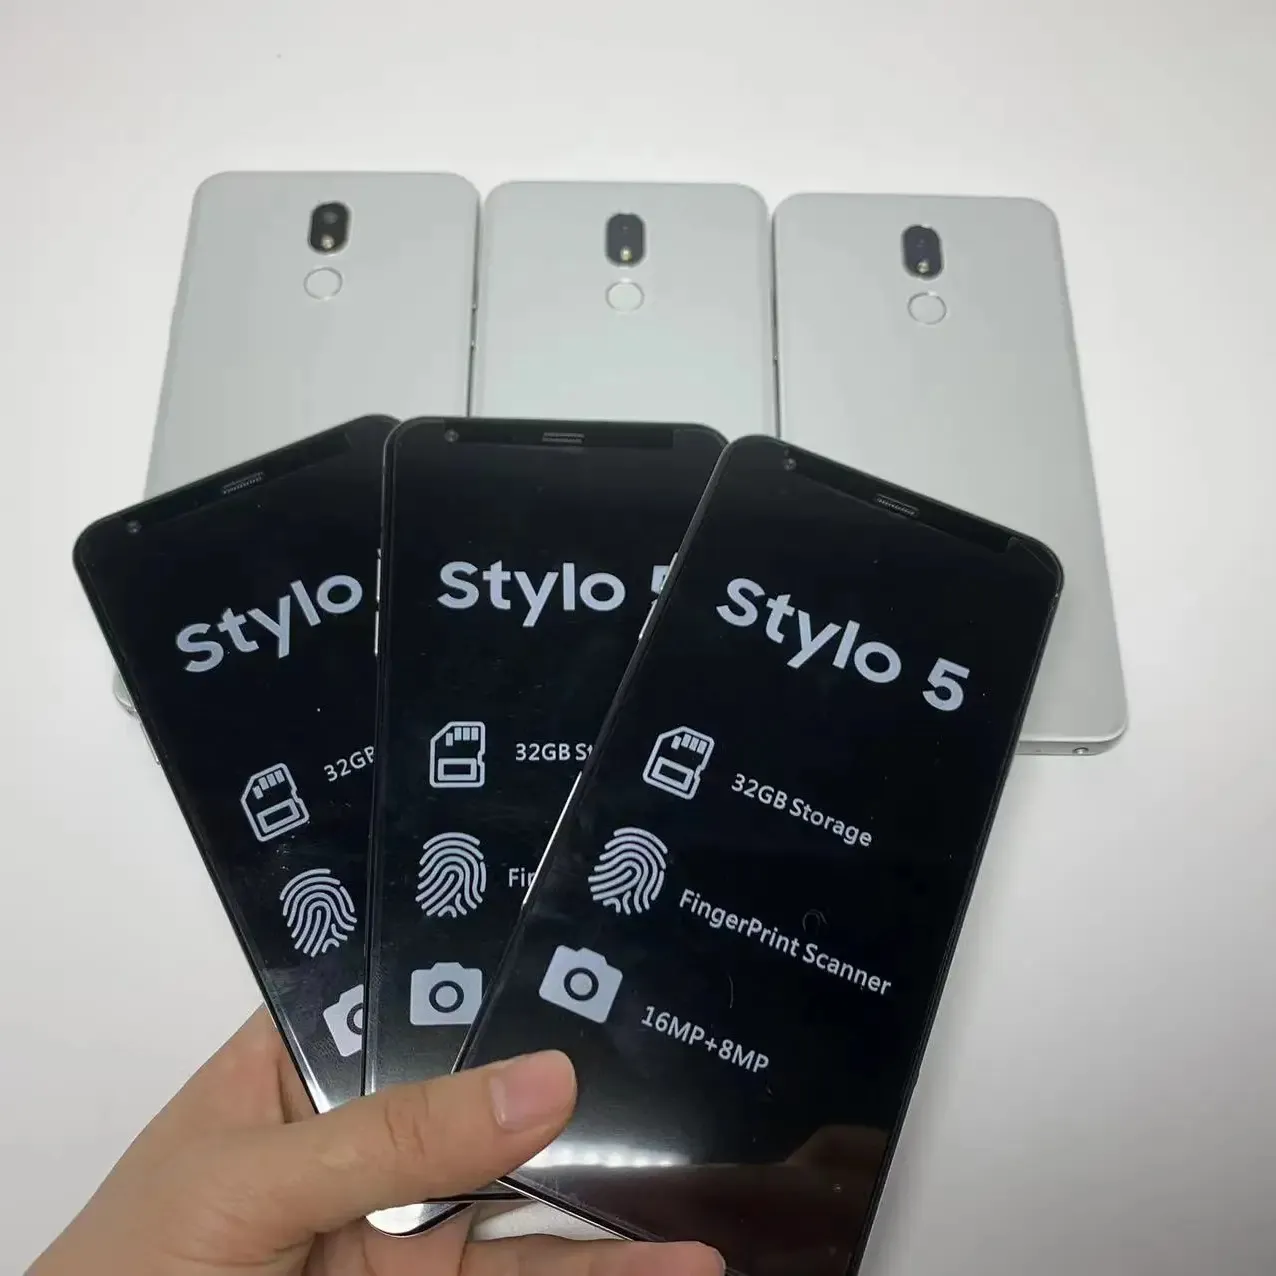 Chất lượng cao và giá thấp mở khóa sử dụng điện thoại di động cho LG Stylo 5 Stylo 6 32GB 4G Android điện thoại thông minh